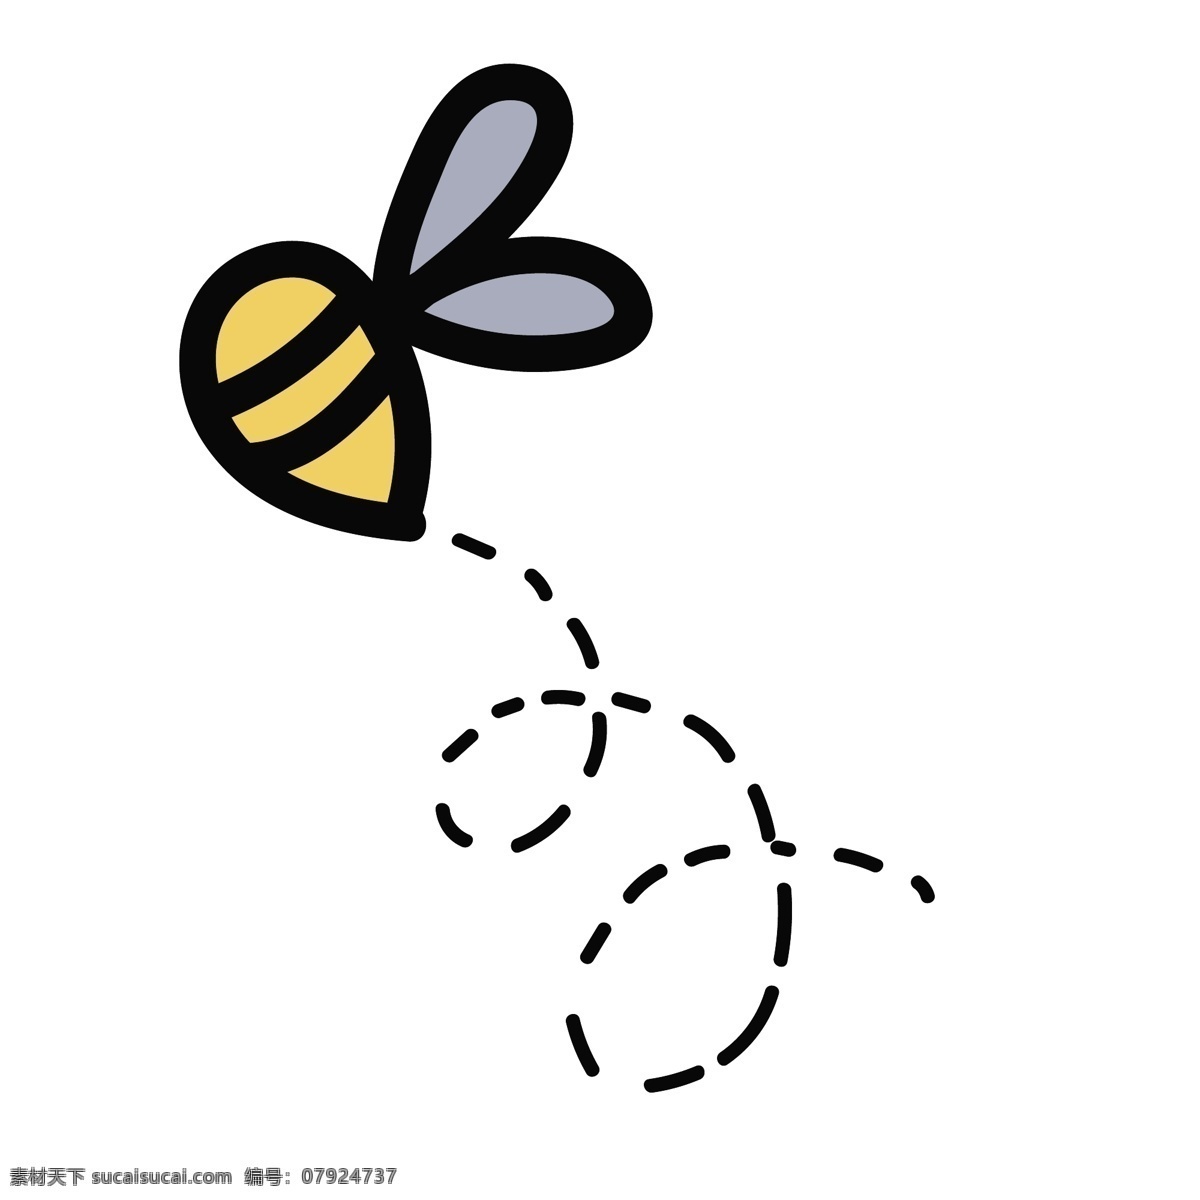 蜜蜂 简笔画 t恤印花 卡通印花 简单印花 儿童衫 线描 简单图形 卡通 印花 amp 图案